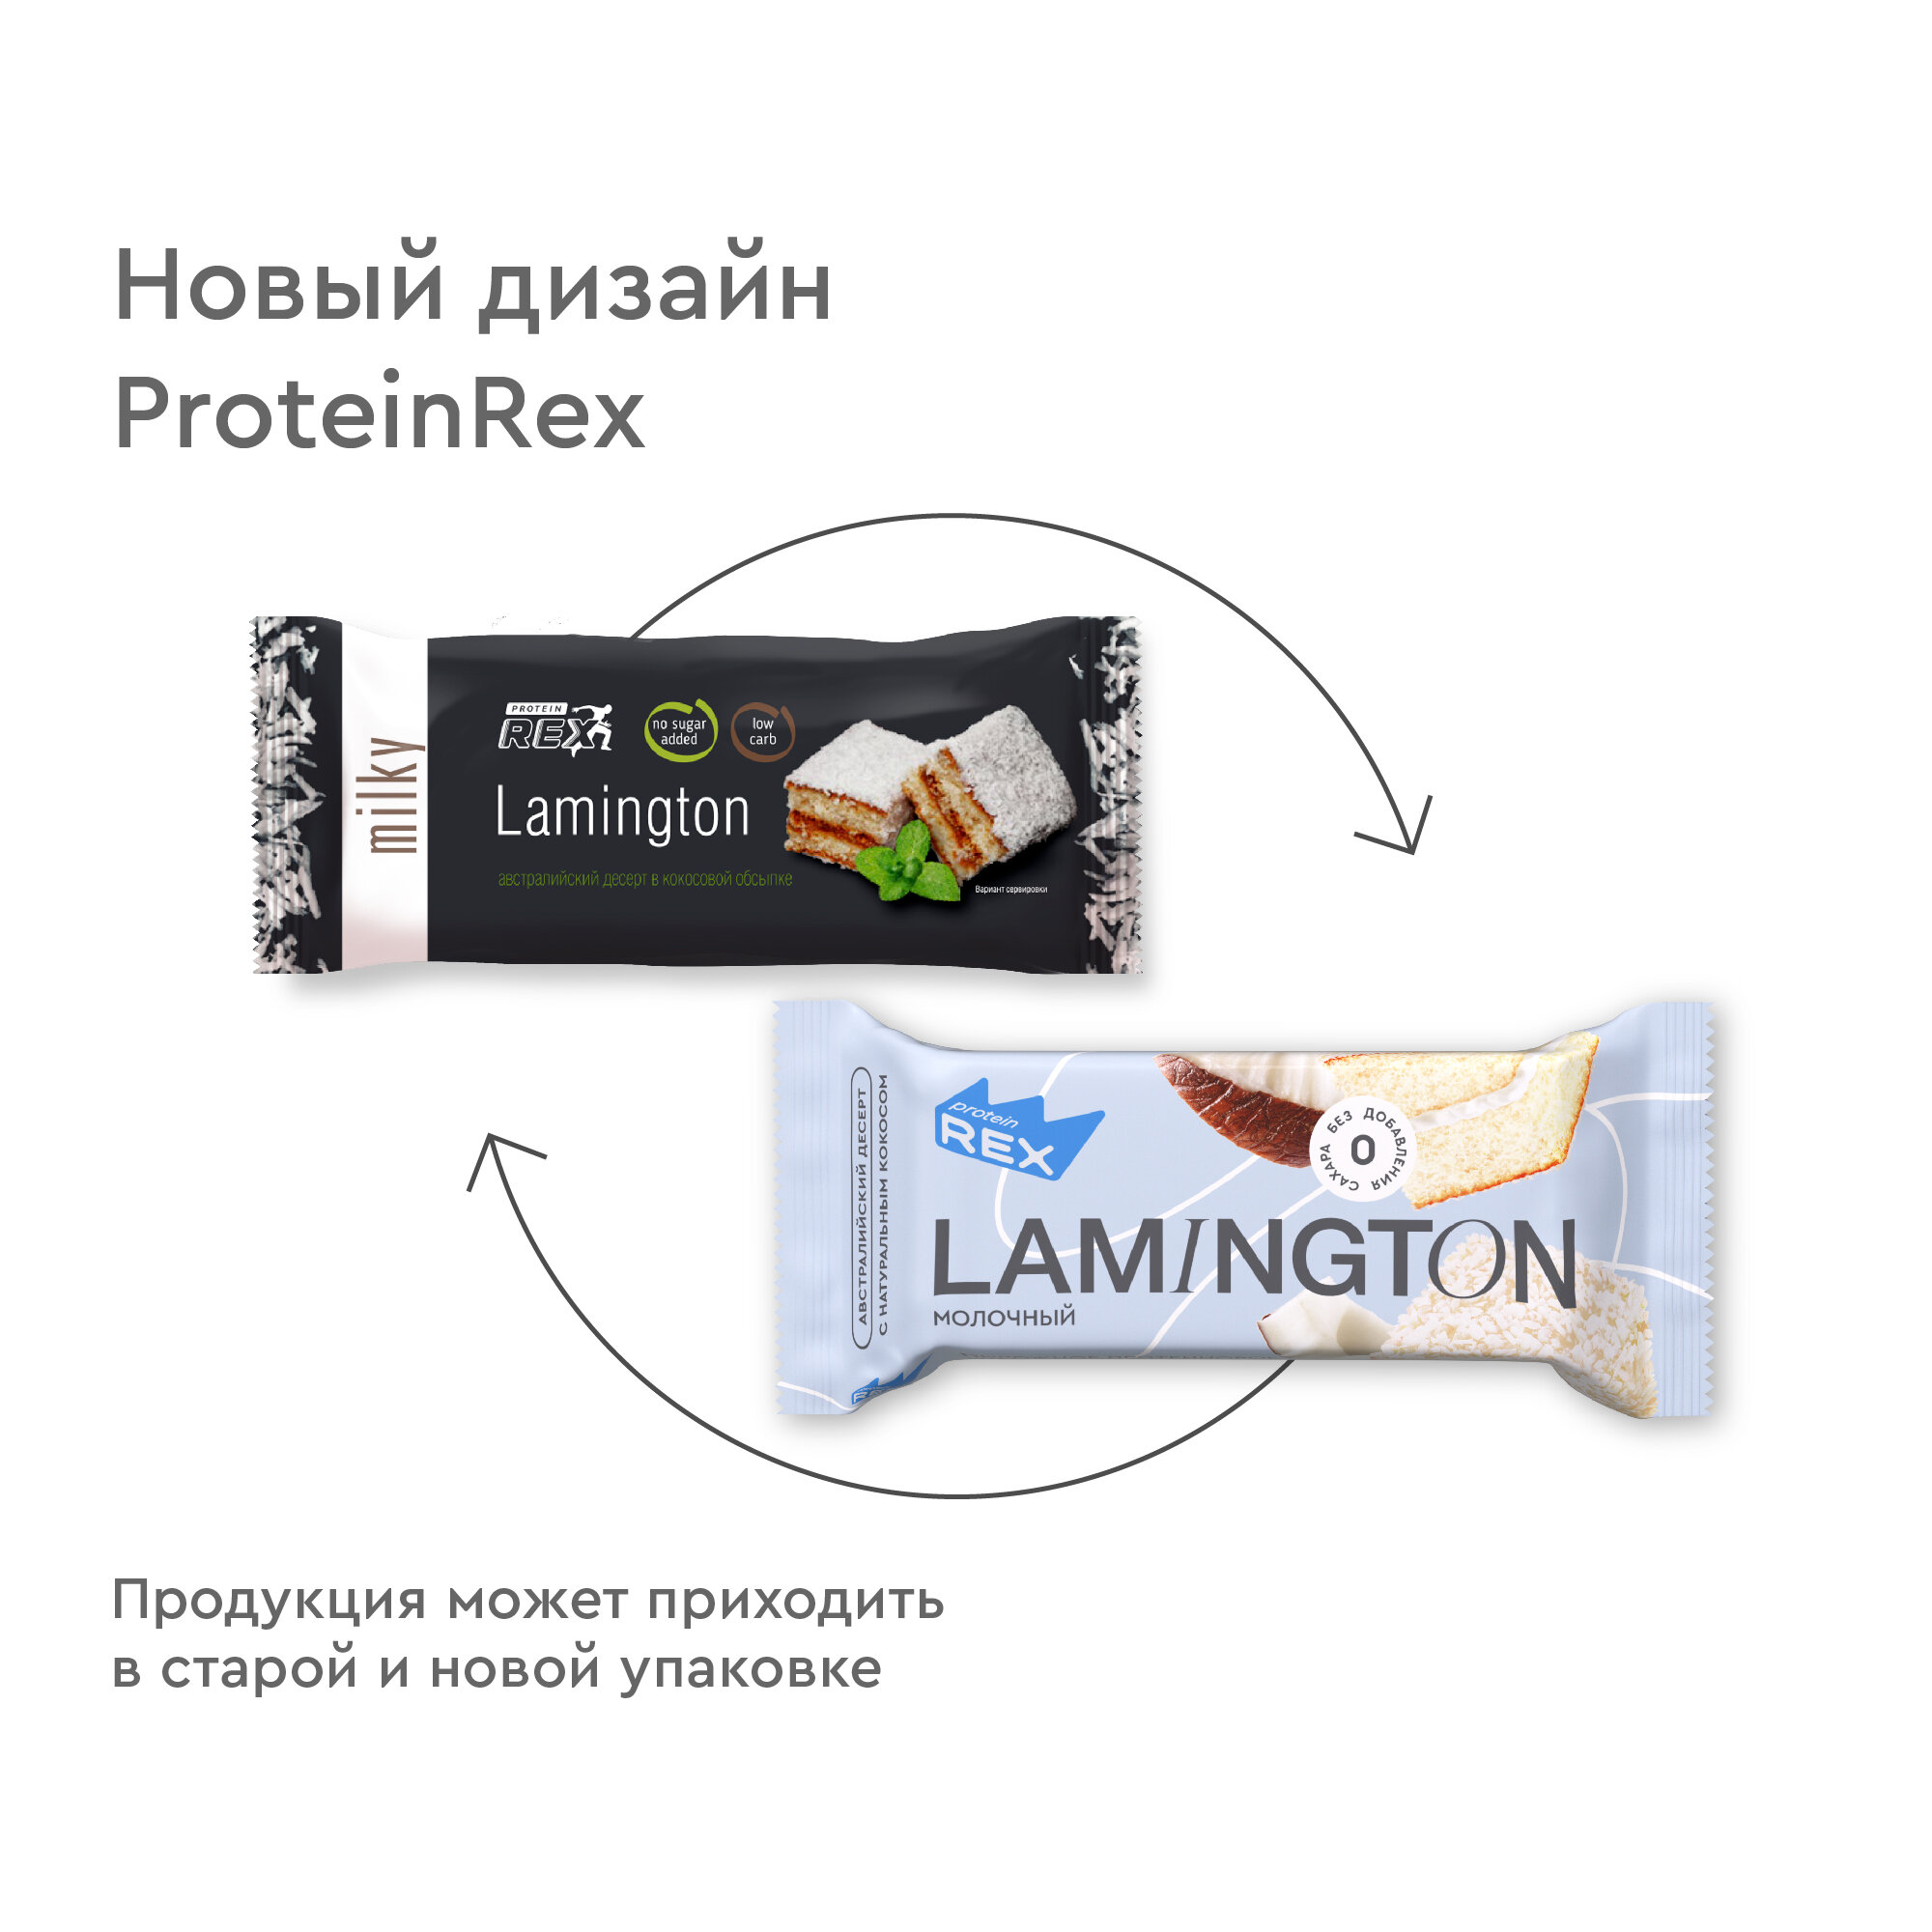 Протеиновые пирожные ProteinRex Lamington Ассорти Мини 4 шт х 50 г без сахара, 195 ккал, спортивное питание, ПП сладости, спортивное печенье